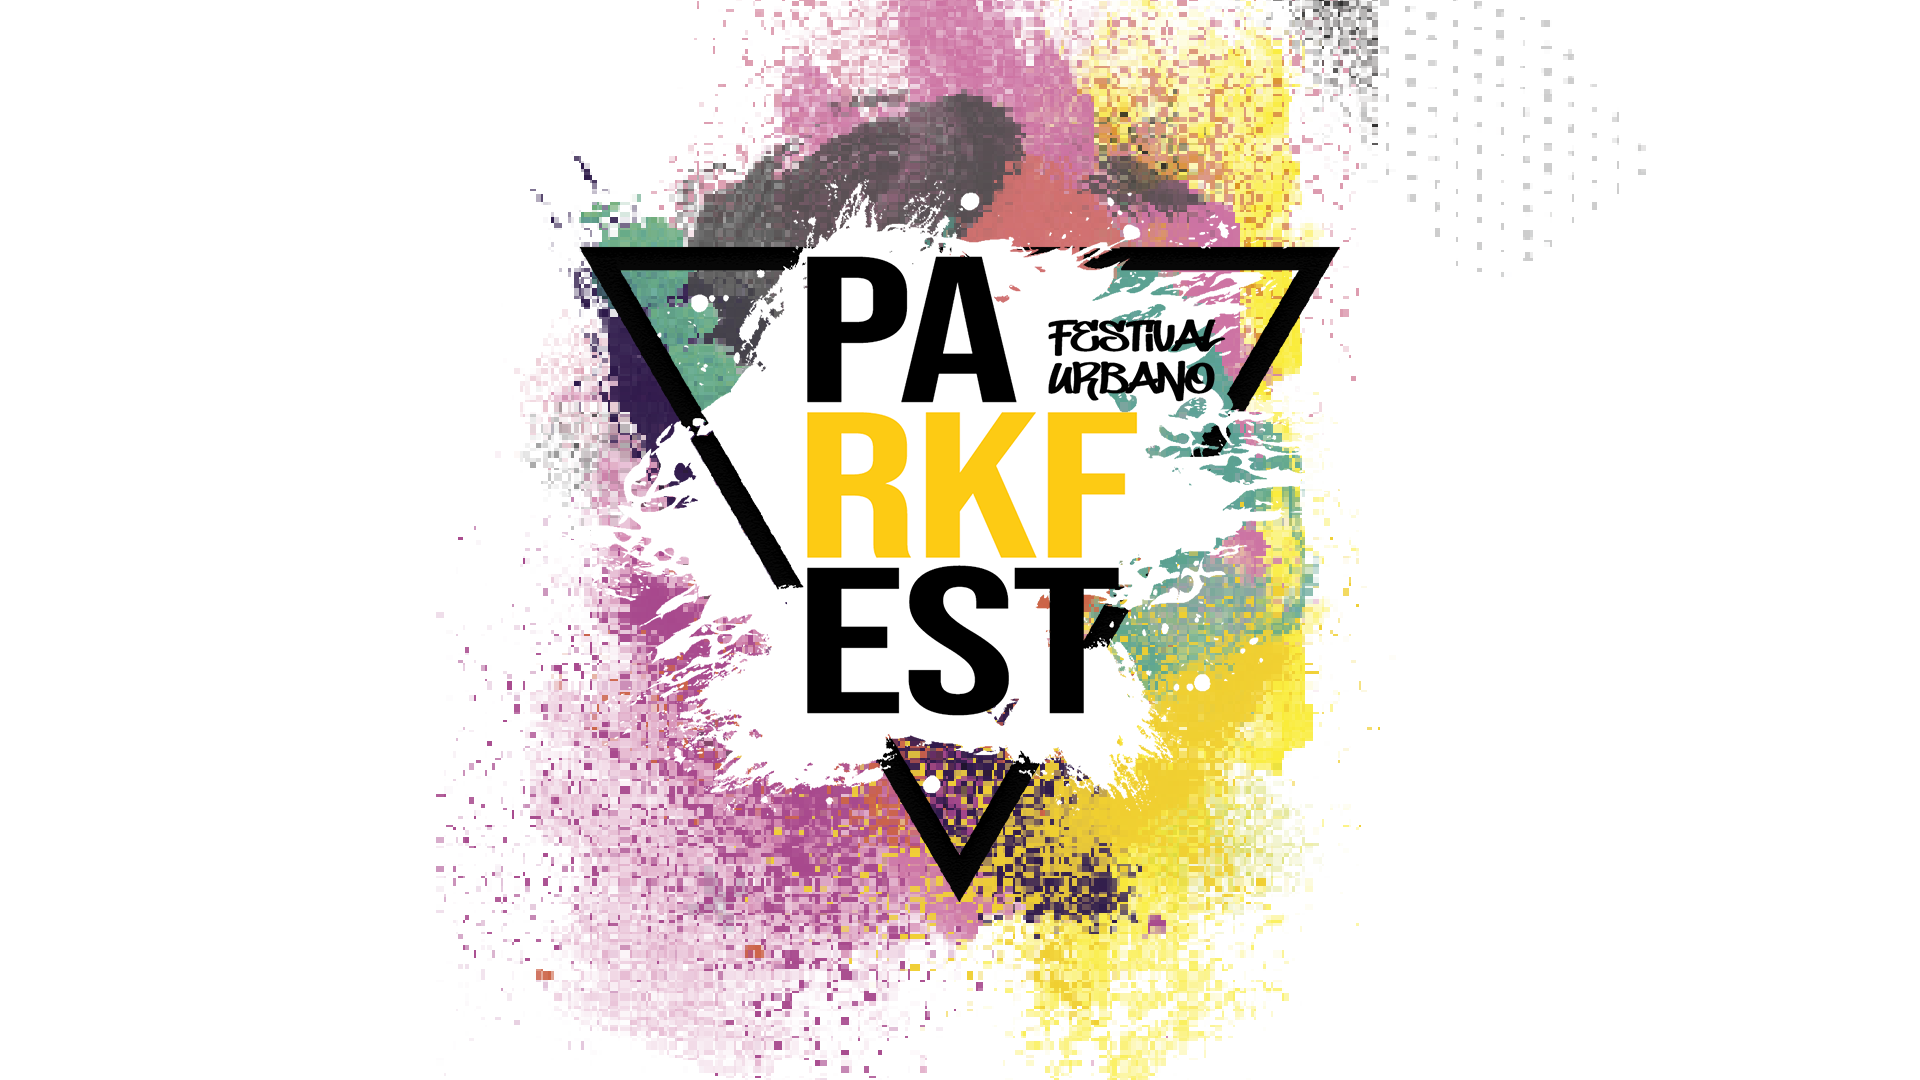 Parkfest Festival